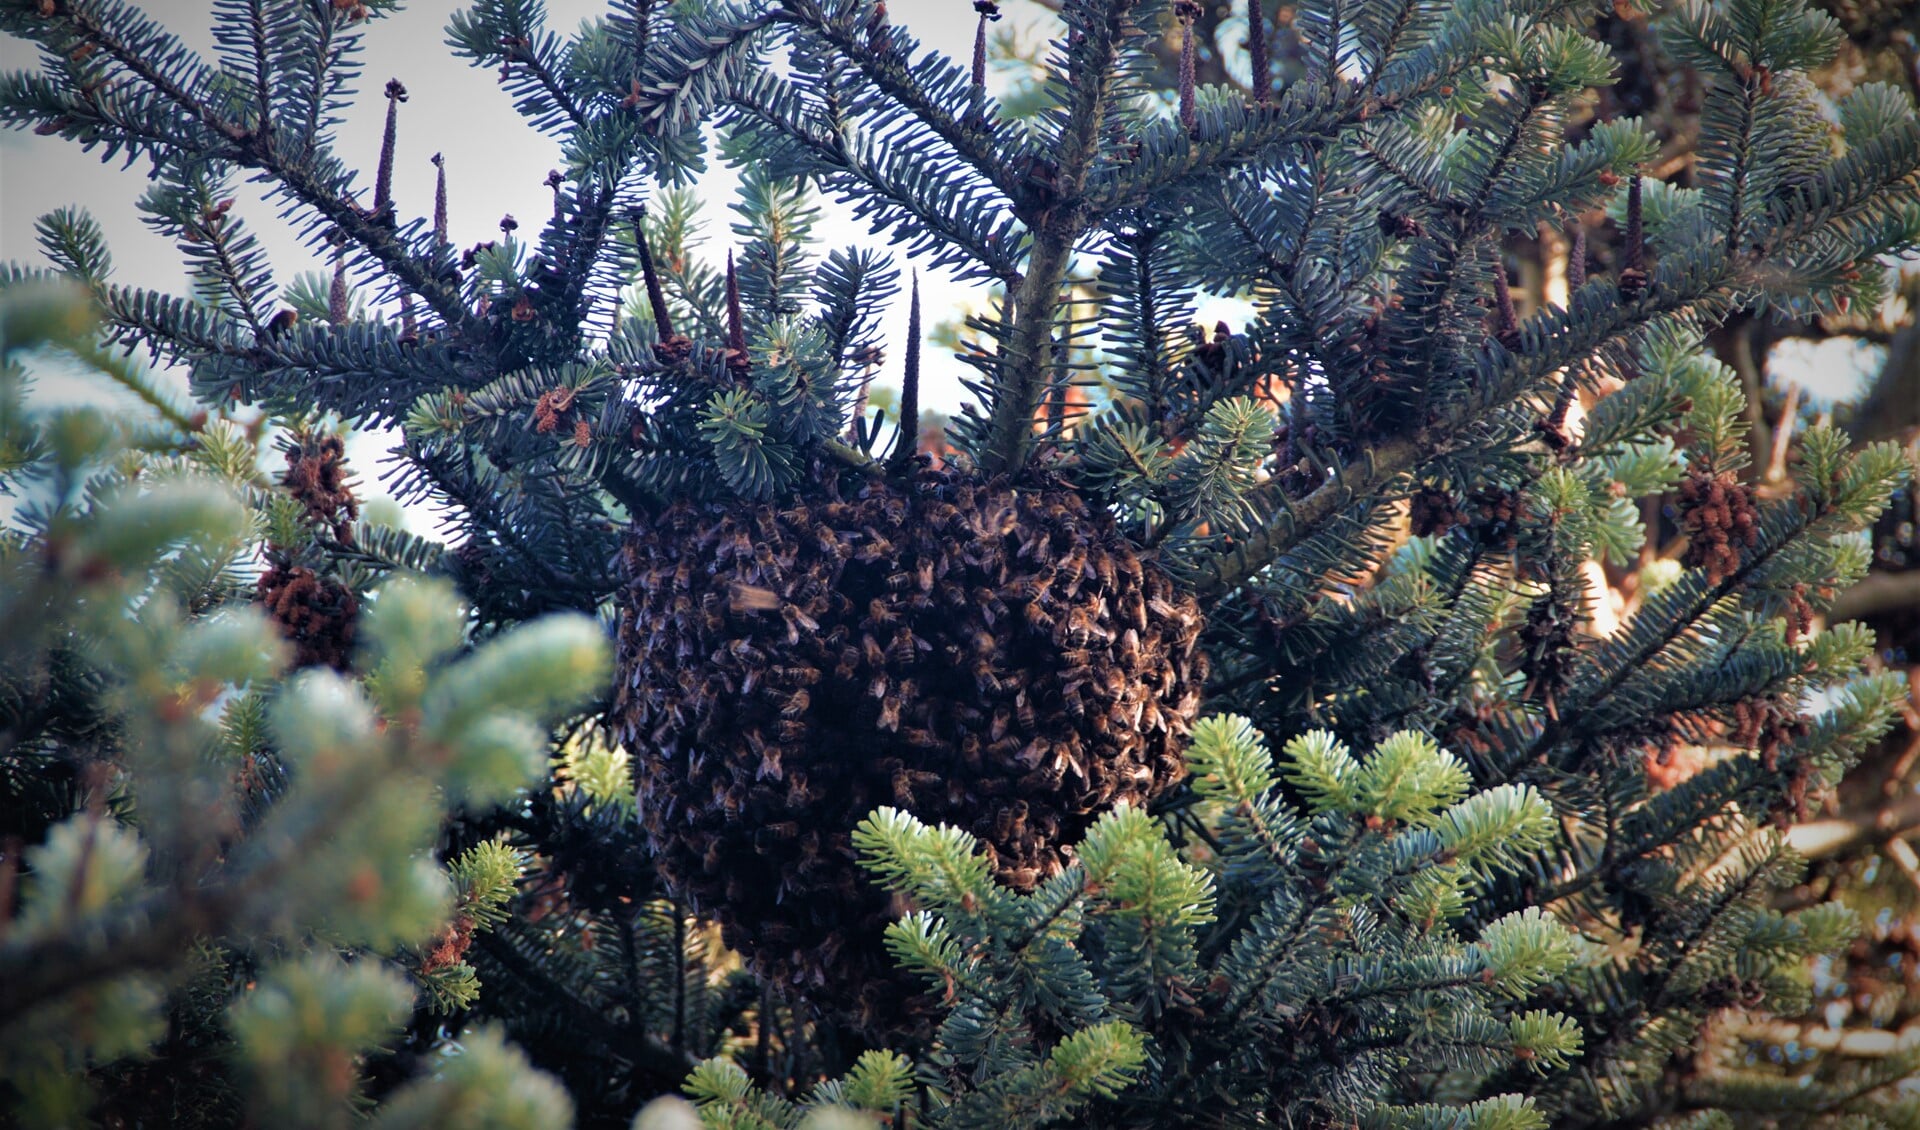 De bijen vormden een druppelvormige bel in de boom.